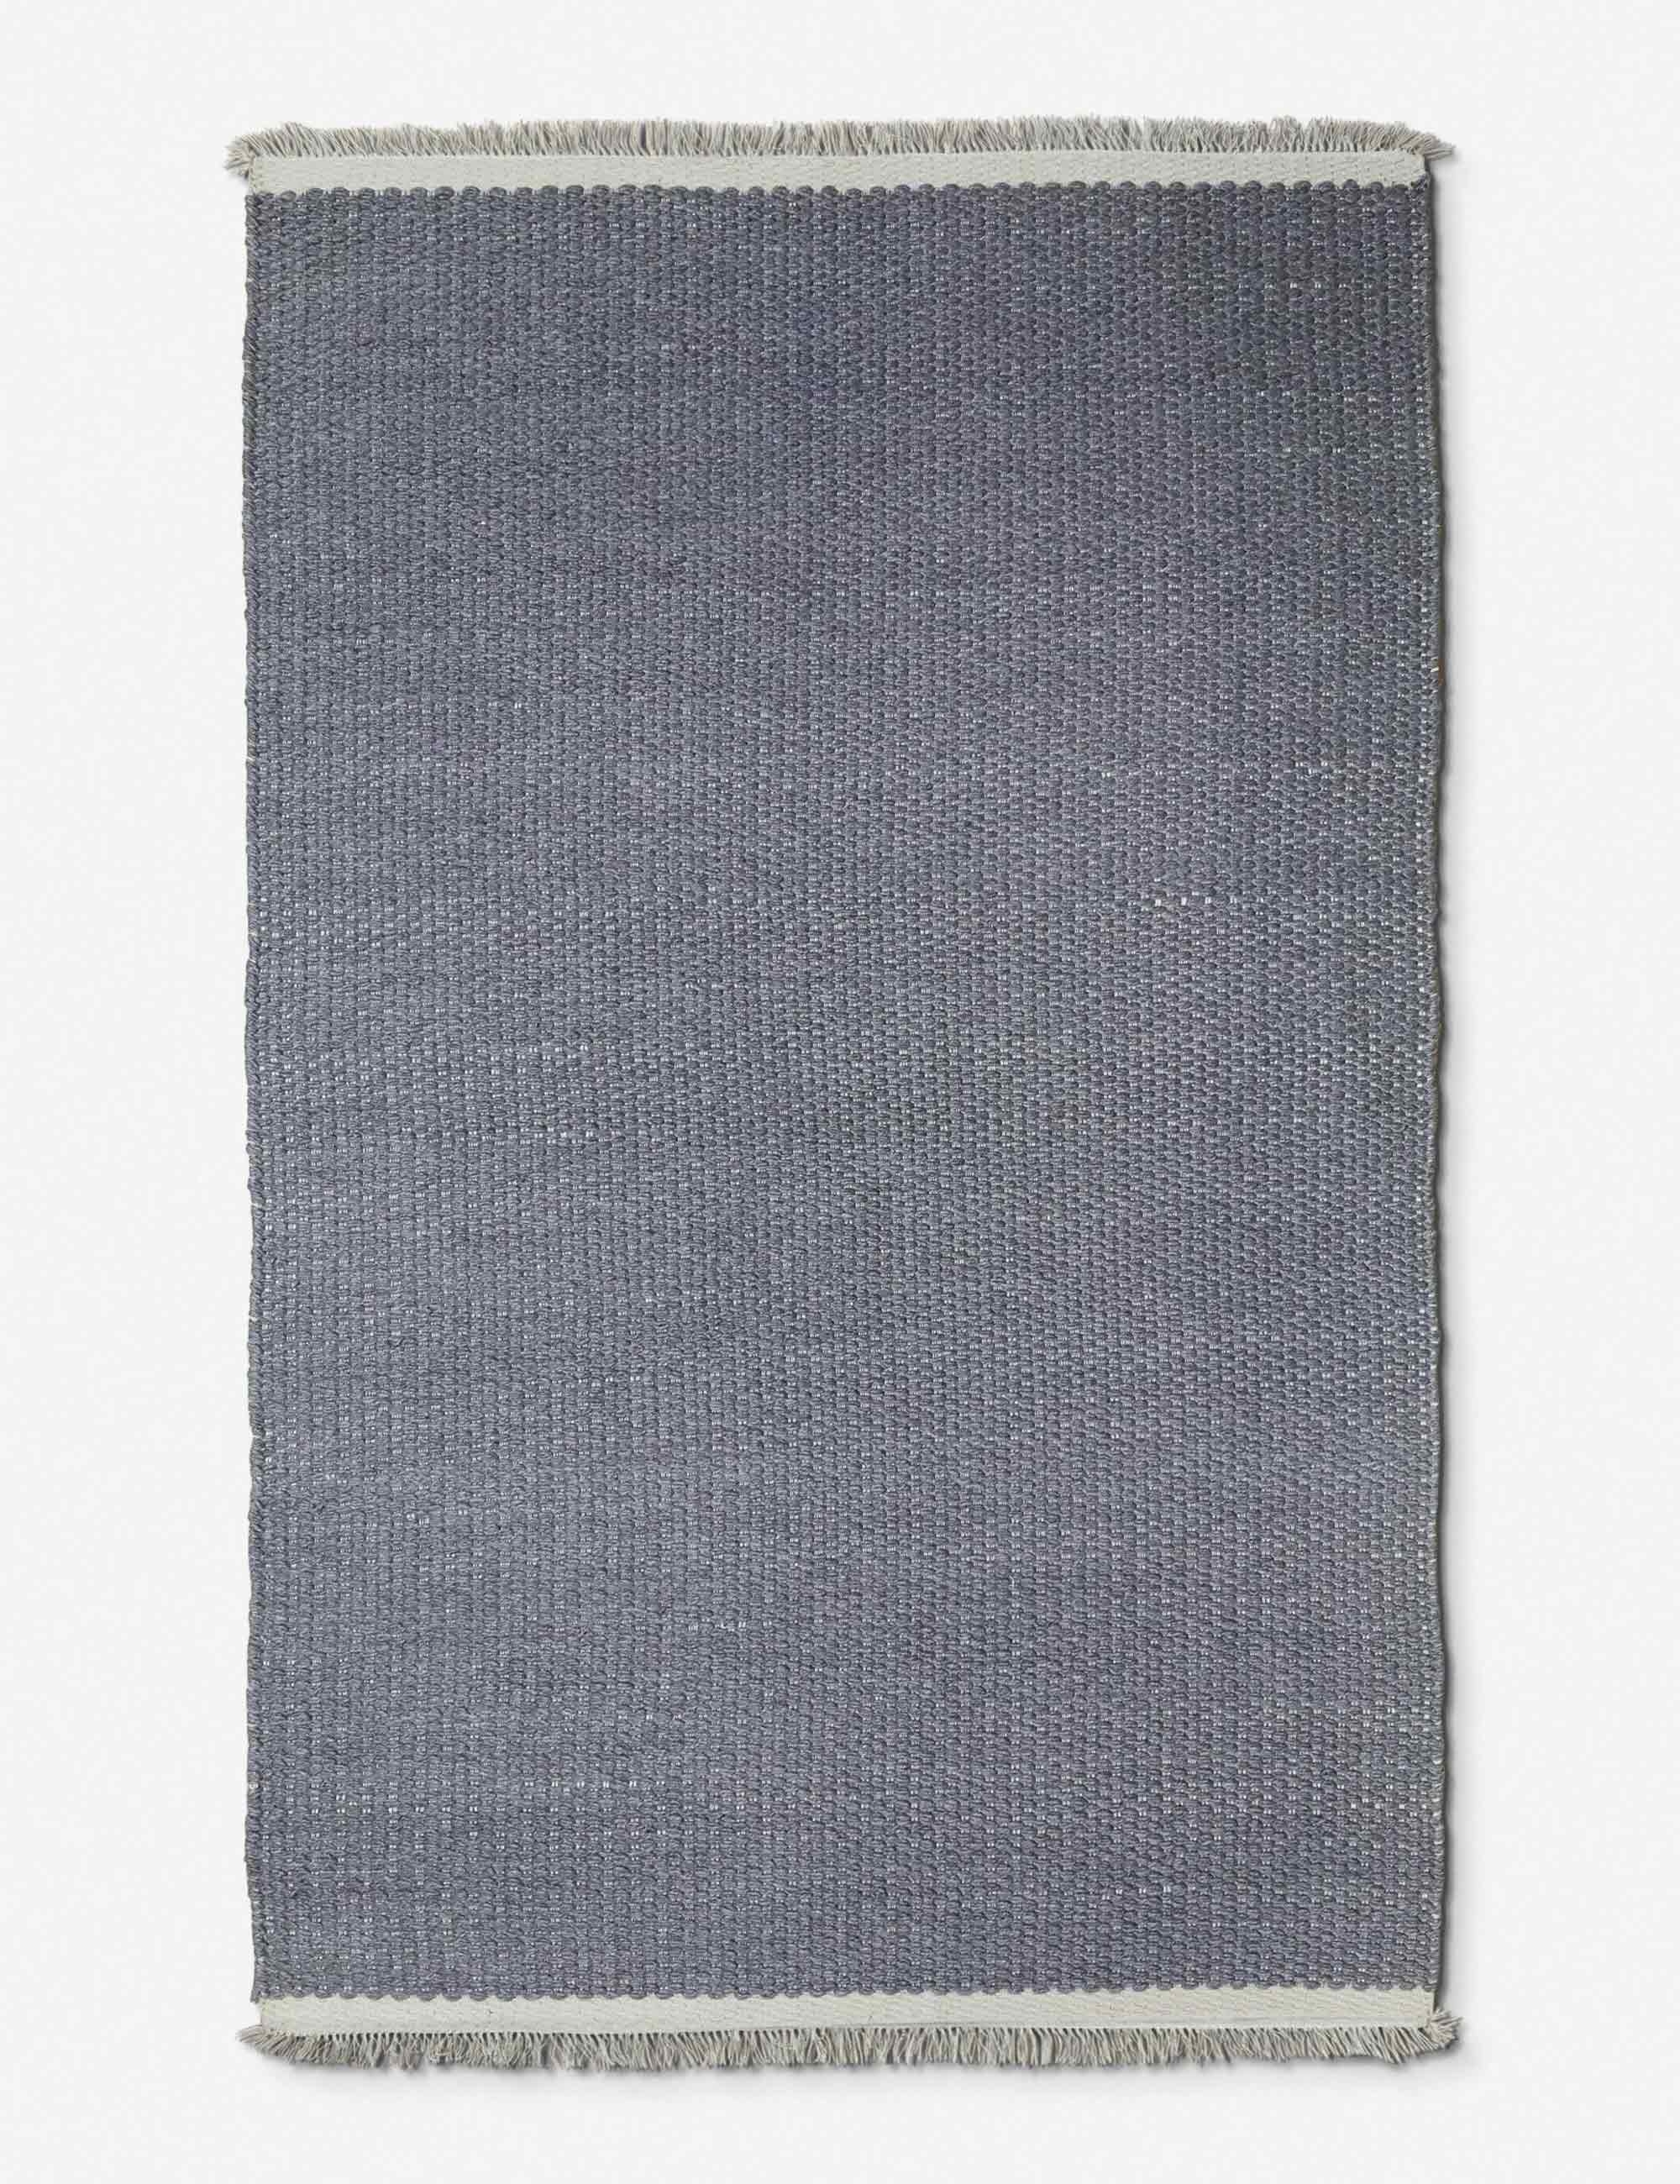 Bella Rug, Gray 9' x 12' - Image 3